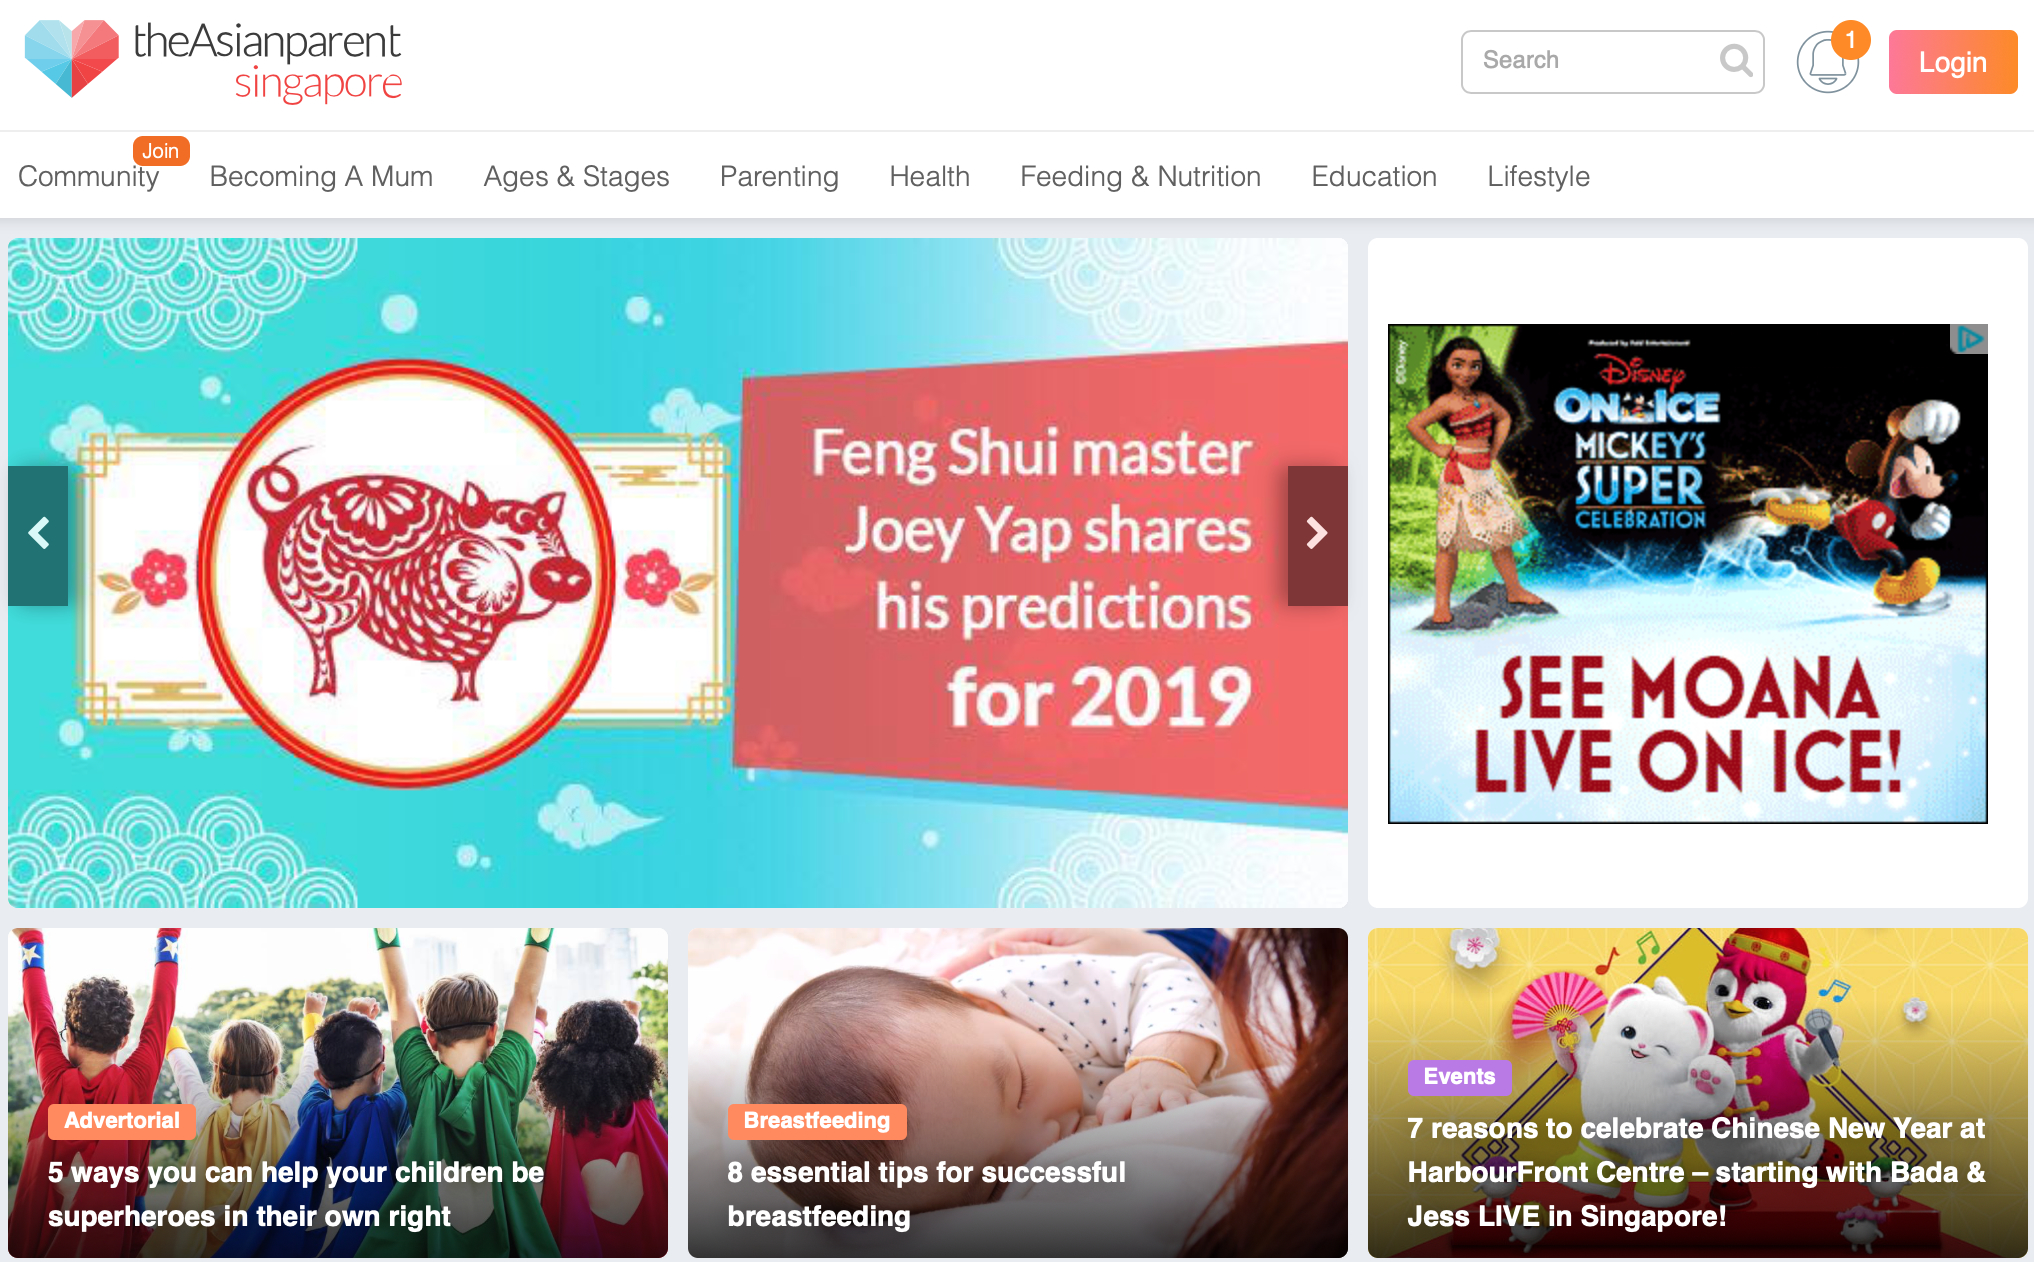 Singapore-headquartered parenting content platform Asianparent raises 7-figure Series C2 round